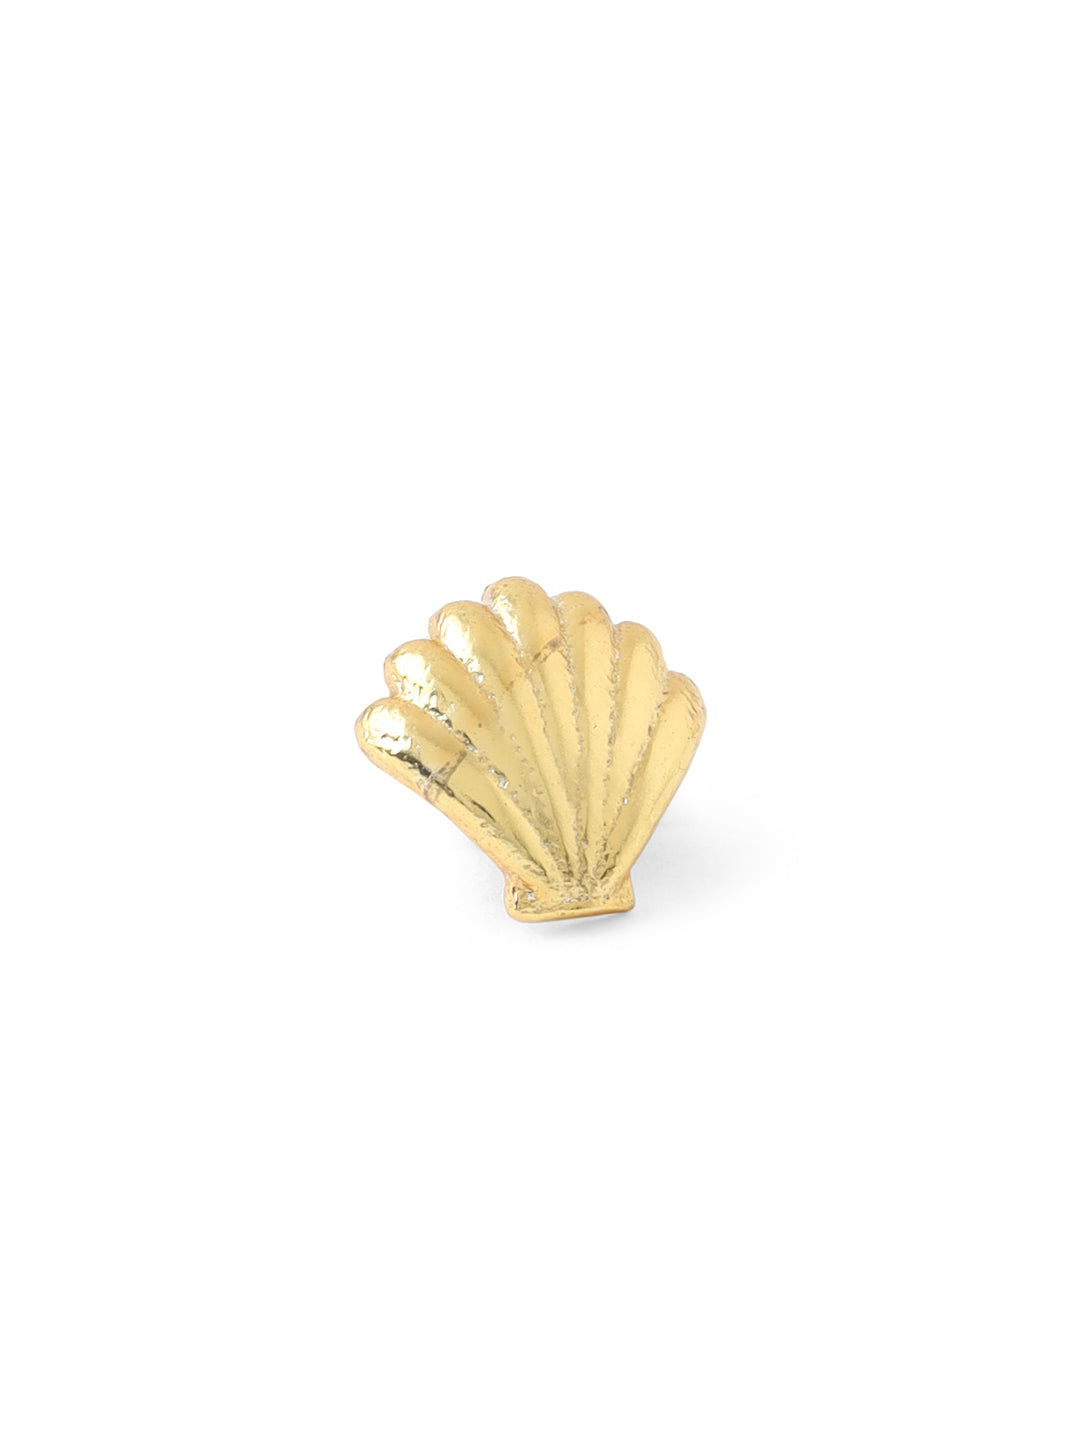 Shell Watch Pin - Golden